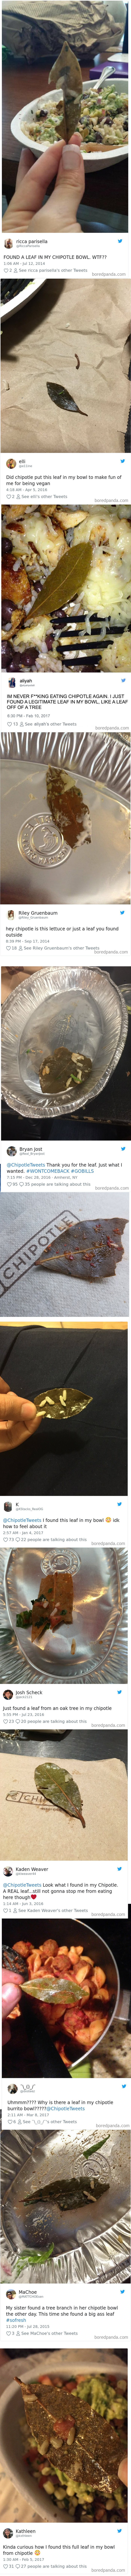 Pronašli su "misteriozni list" u hrani pa se požalili i obrukali na internetu